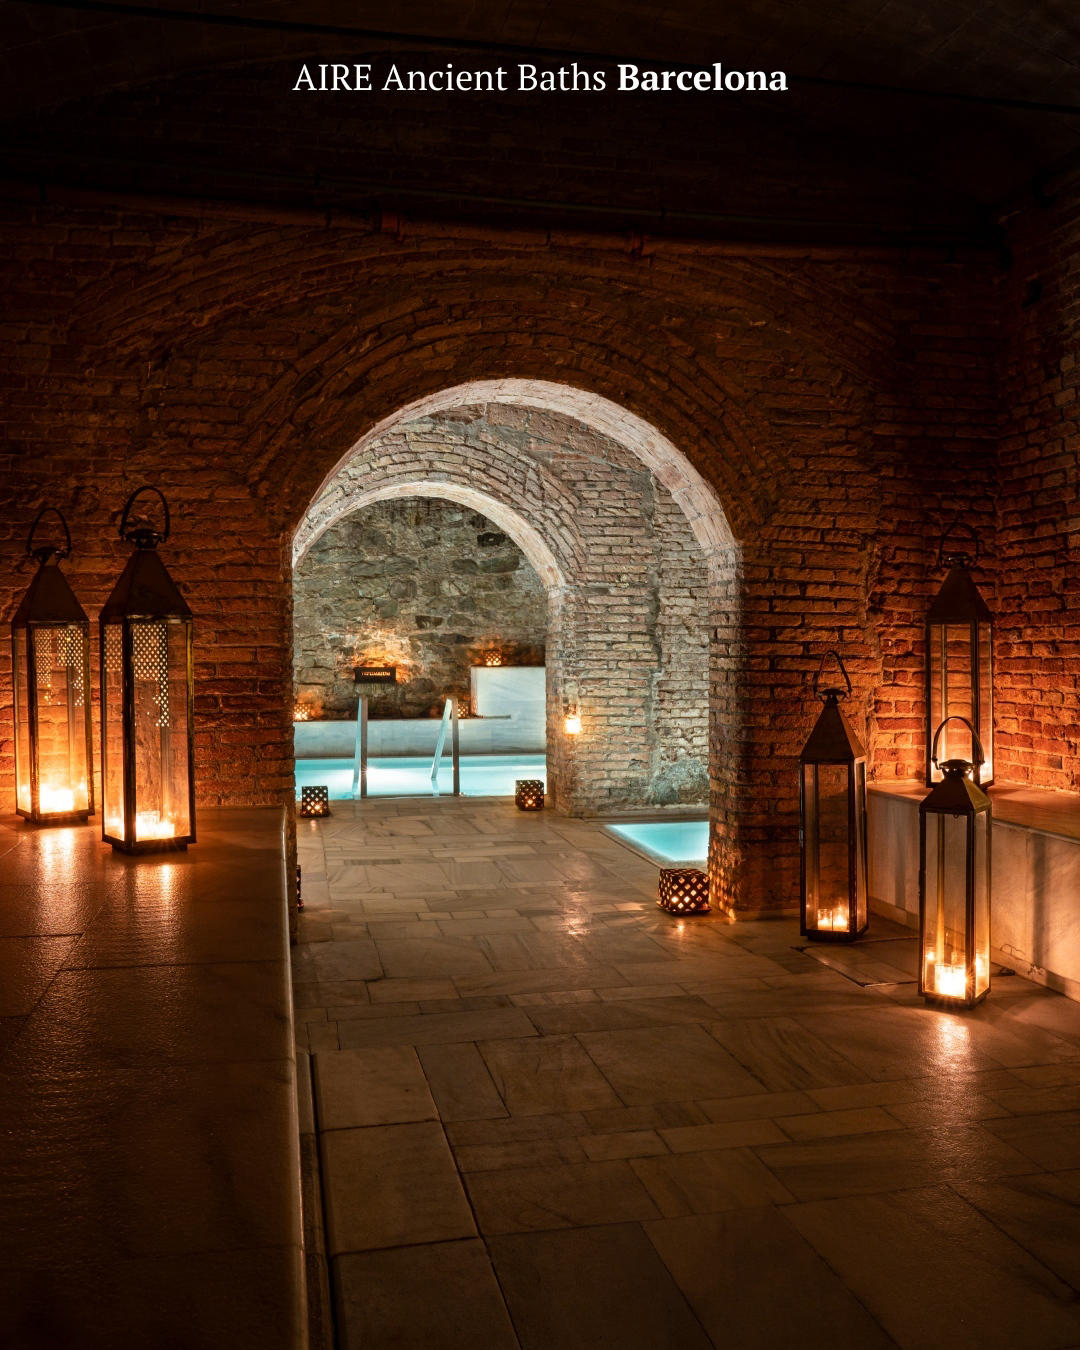 ¿Sabías que AIRE Ancient Baths Barcelona es el centro más grande de España